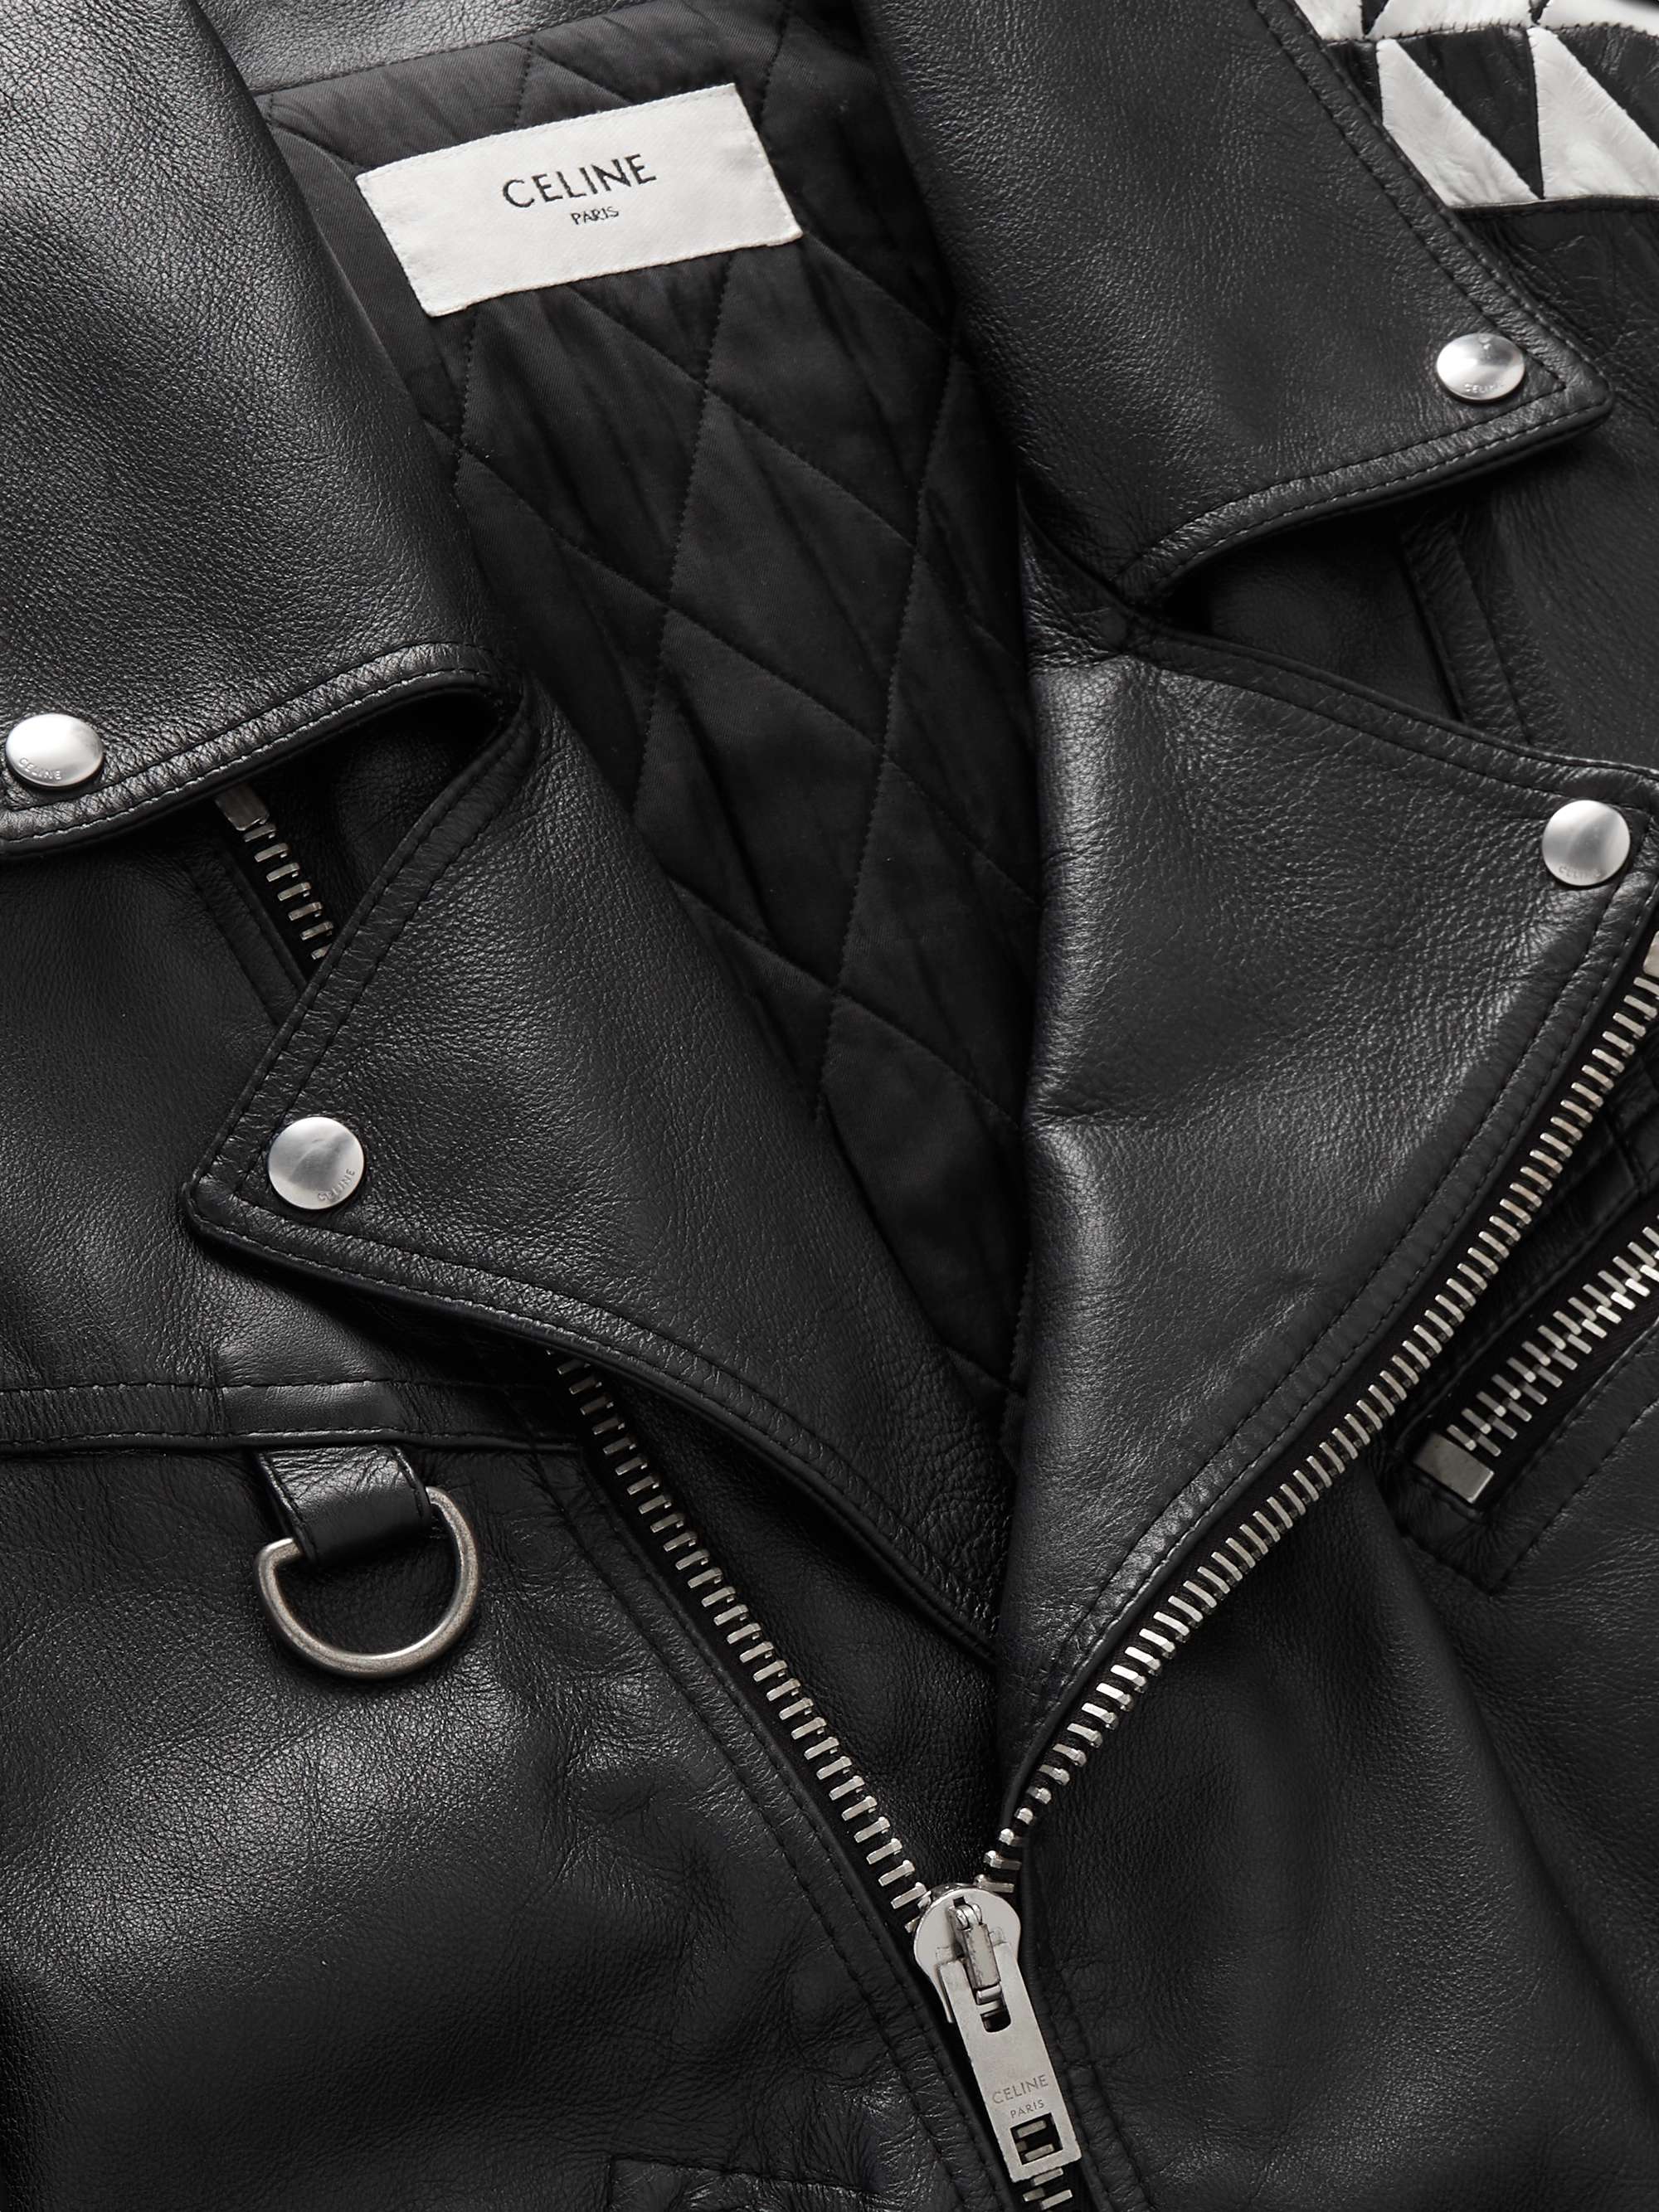 CELINE HOMME Oversized Leather Biker Jacket